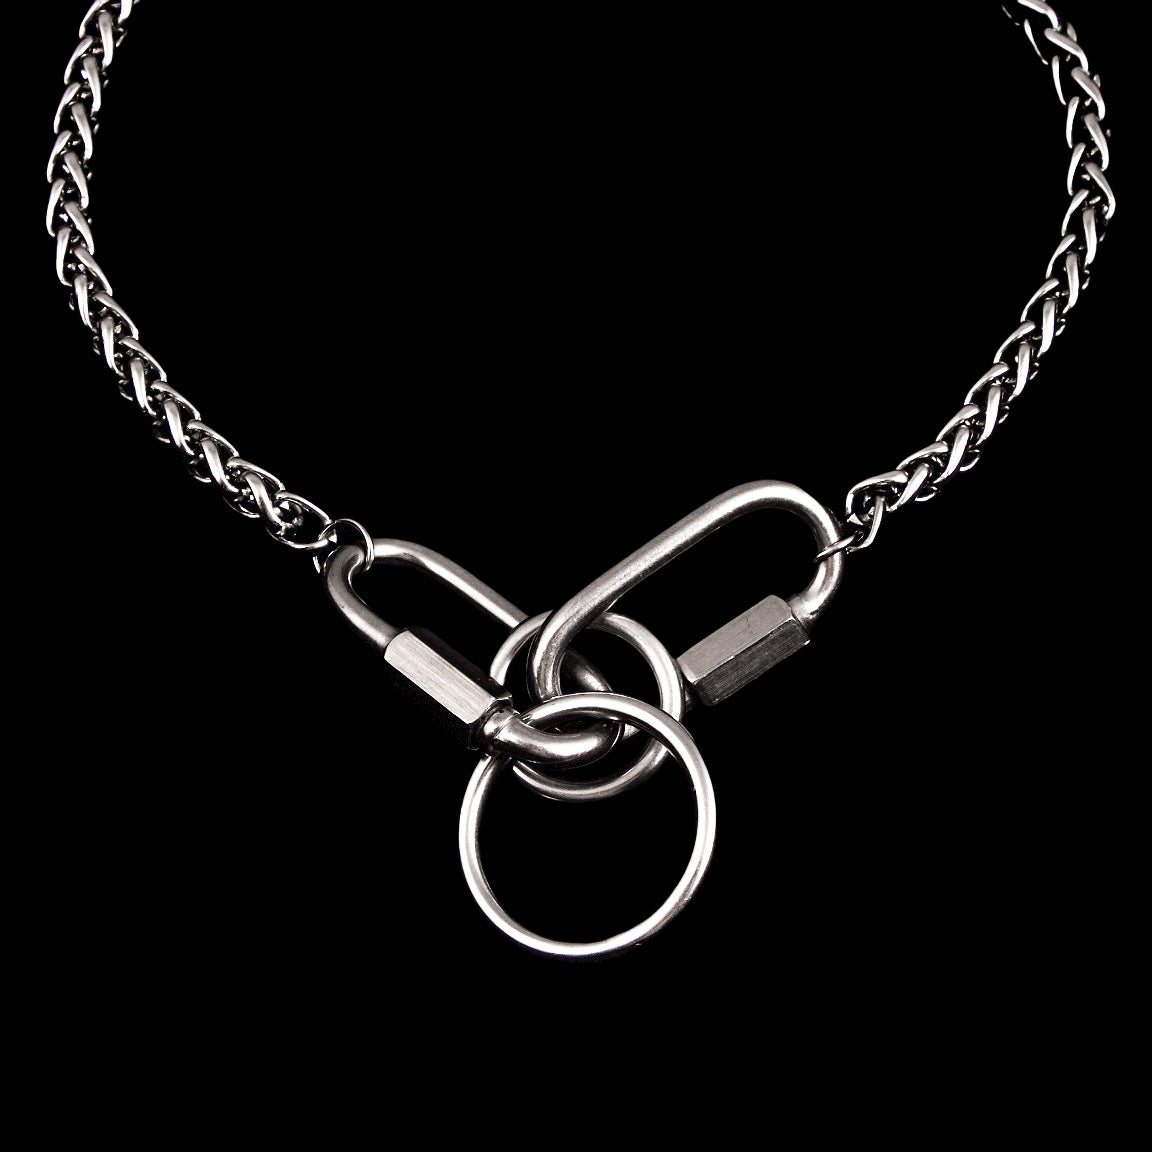 CNK01 Neck Chain